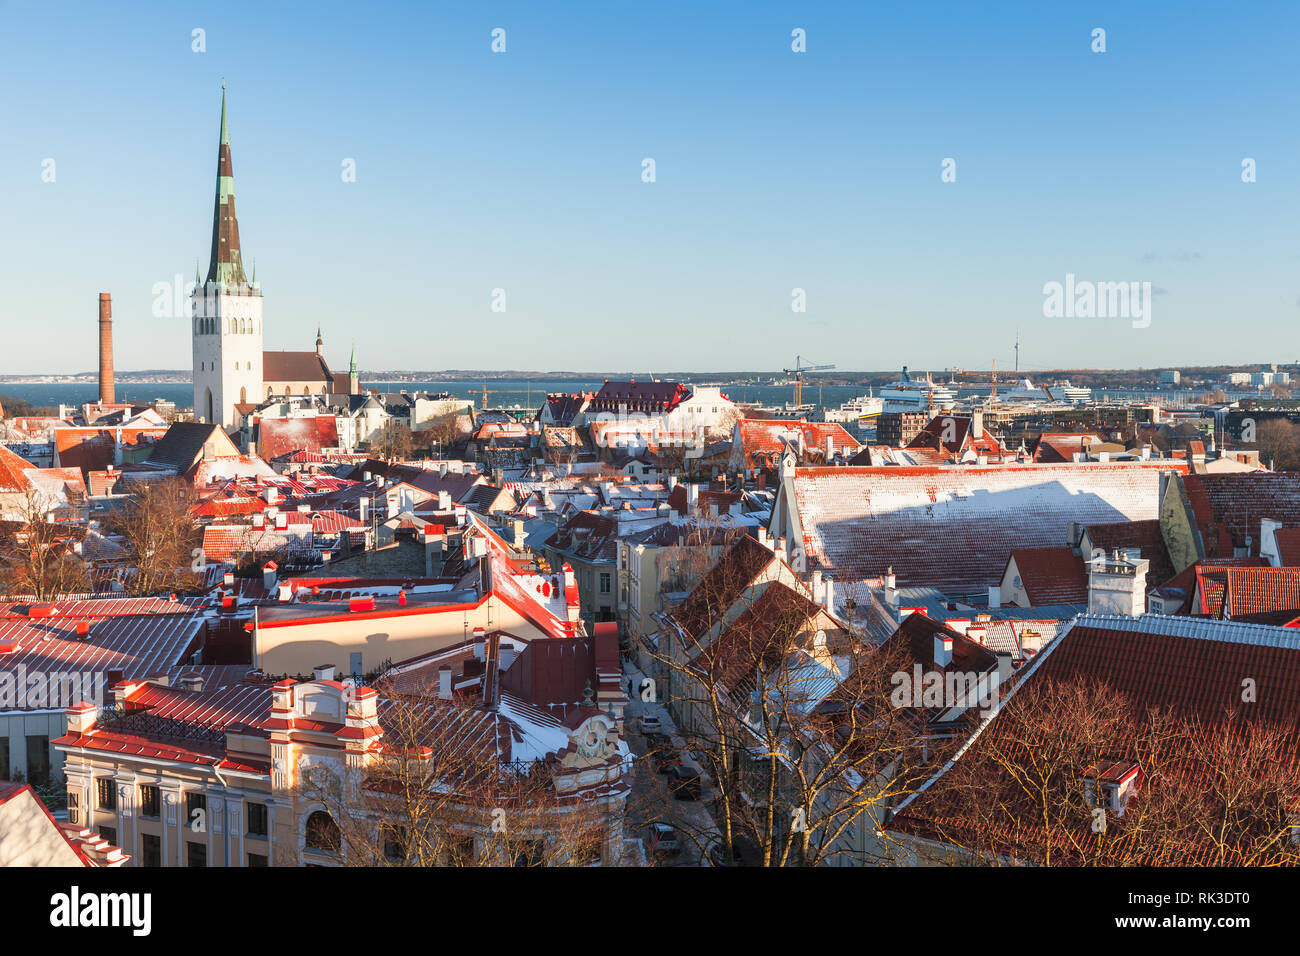 Vieille ville de Tallinn cityscape en hiver. Églises et maisons individuelles avec leur toit de tuiles rouges Banque D'Images